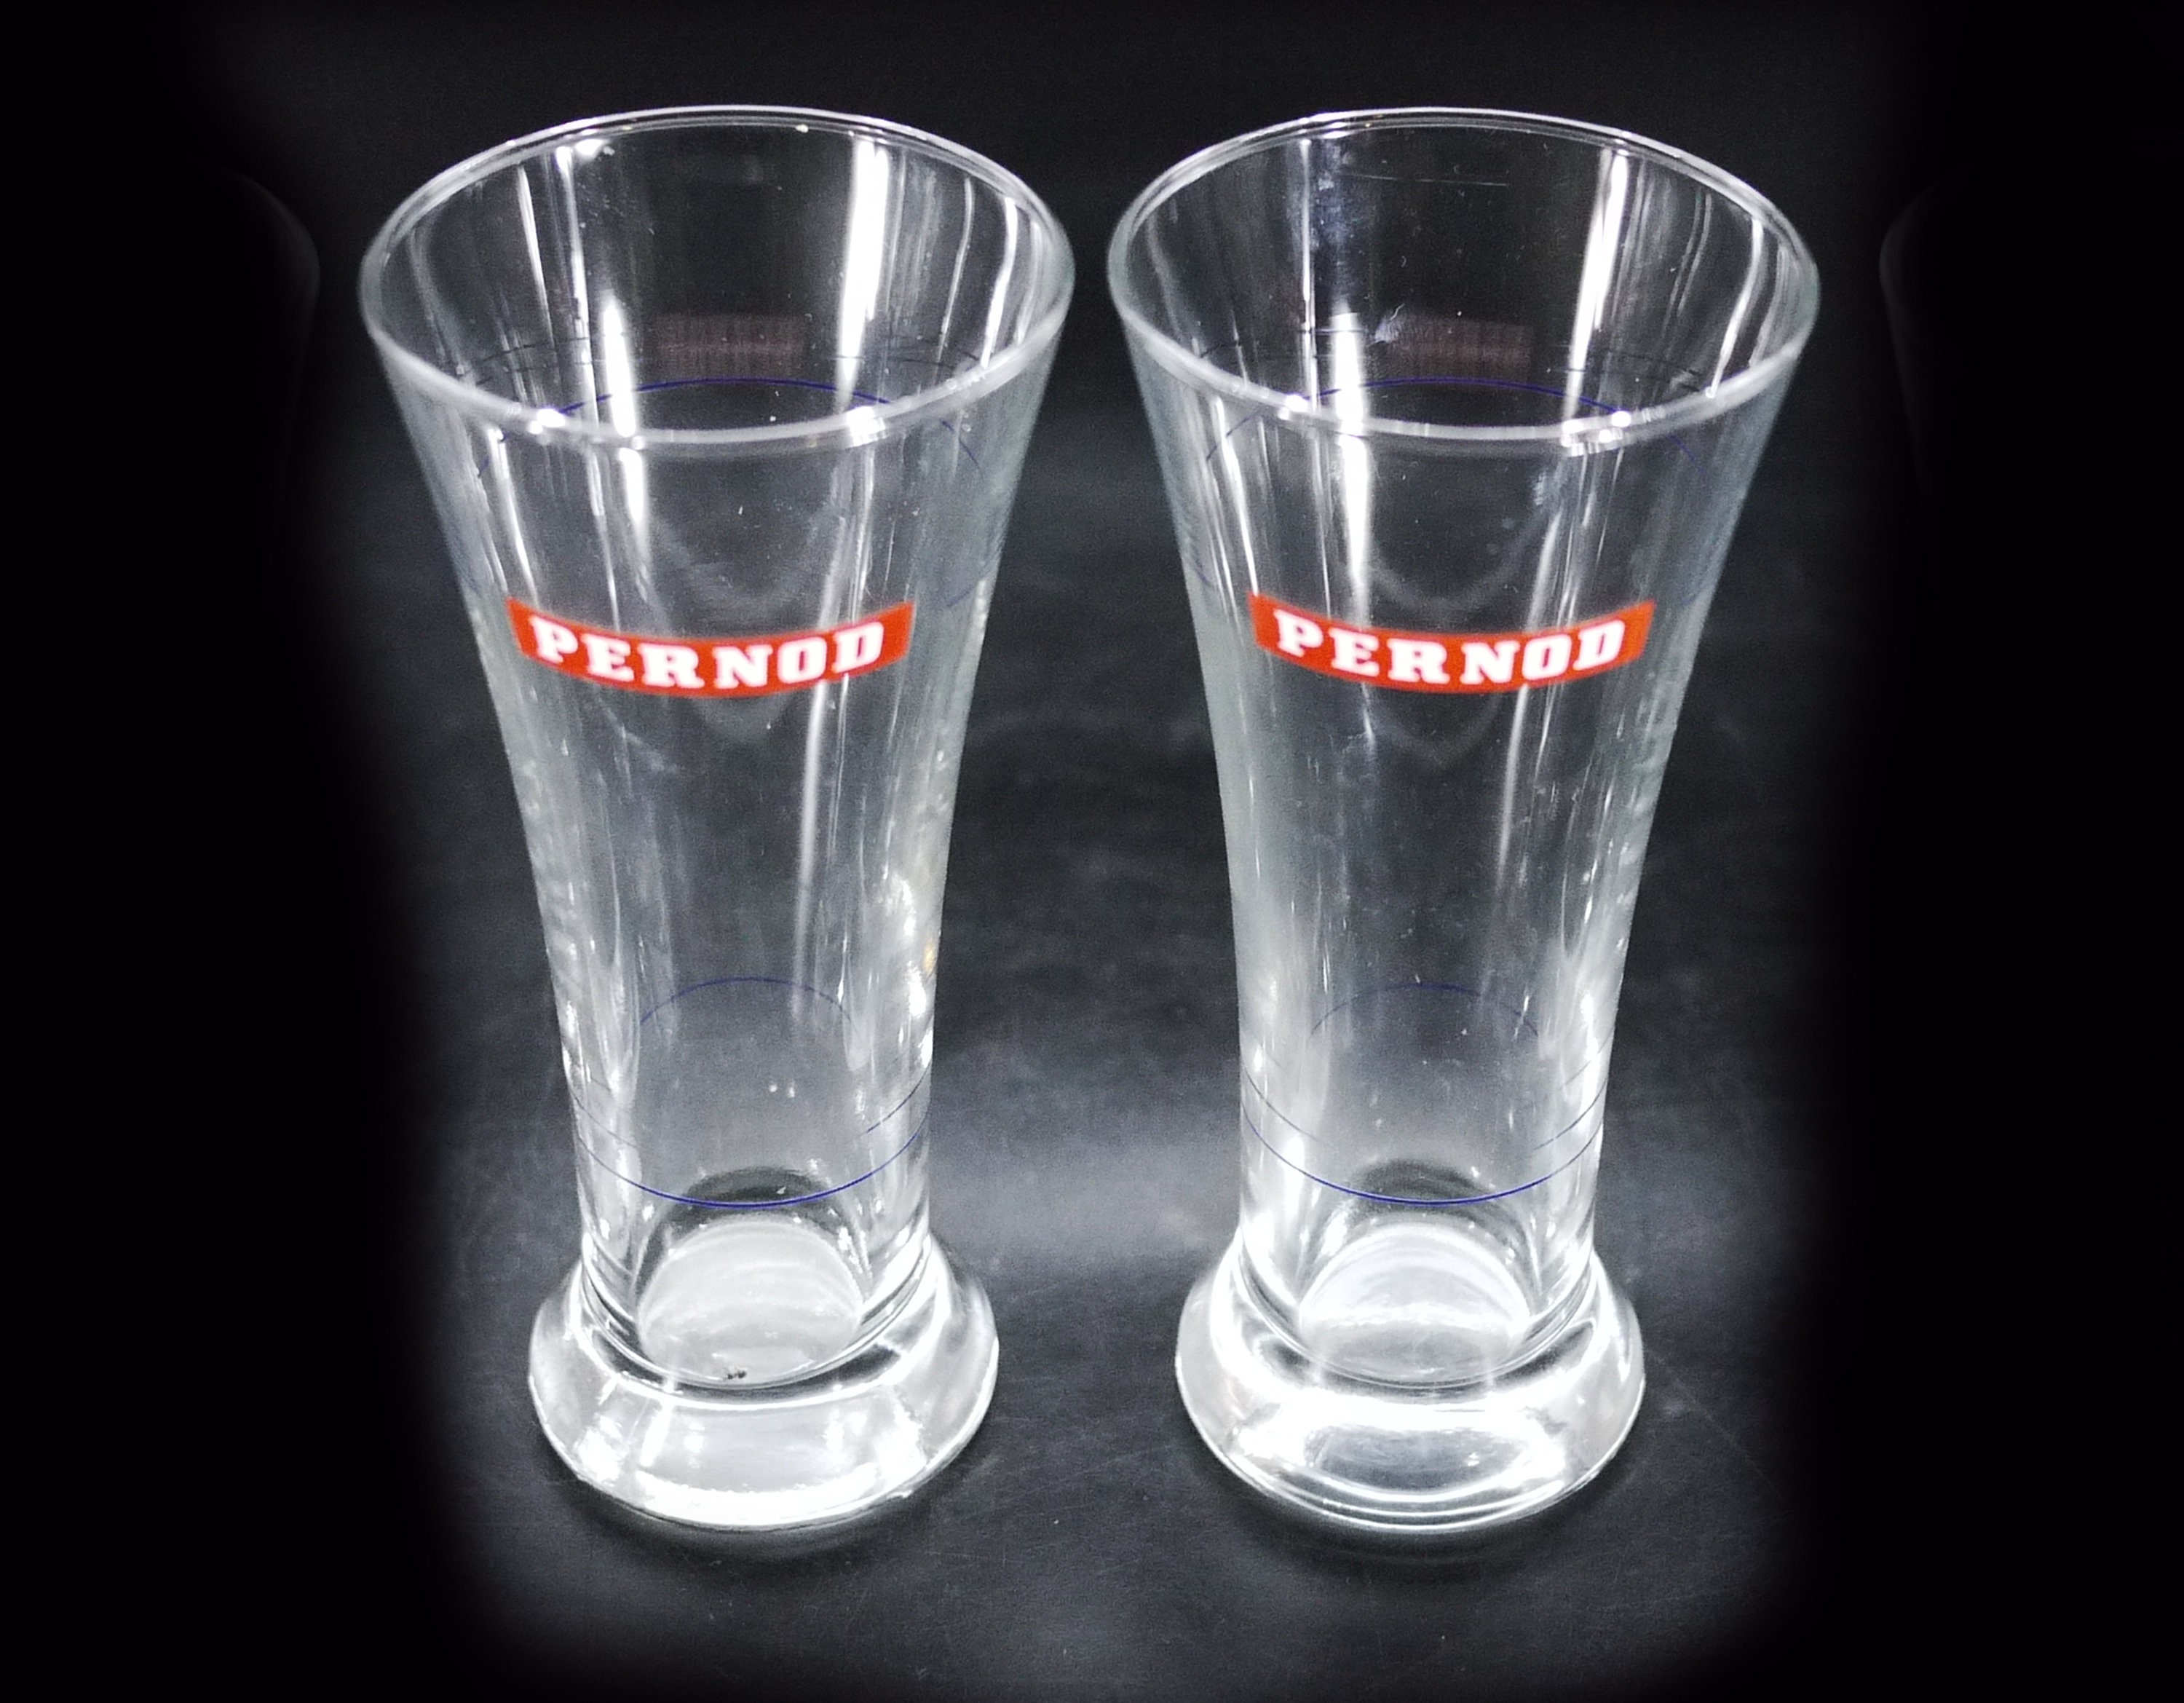 Seneste nyt Ansøger squat Pernod Glasses - Etsy